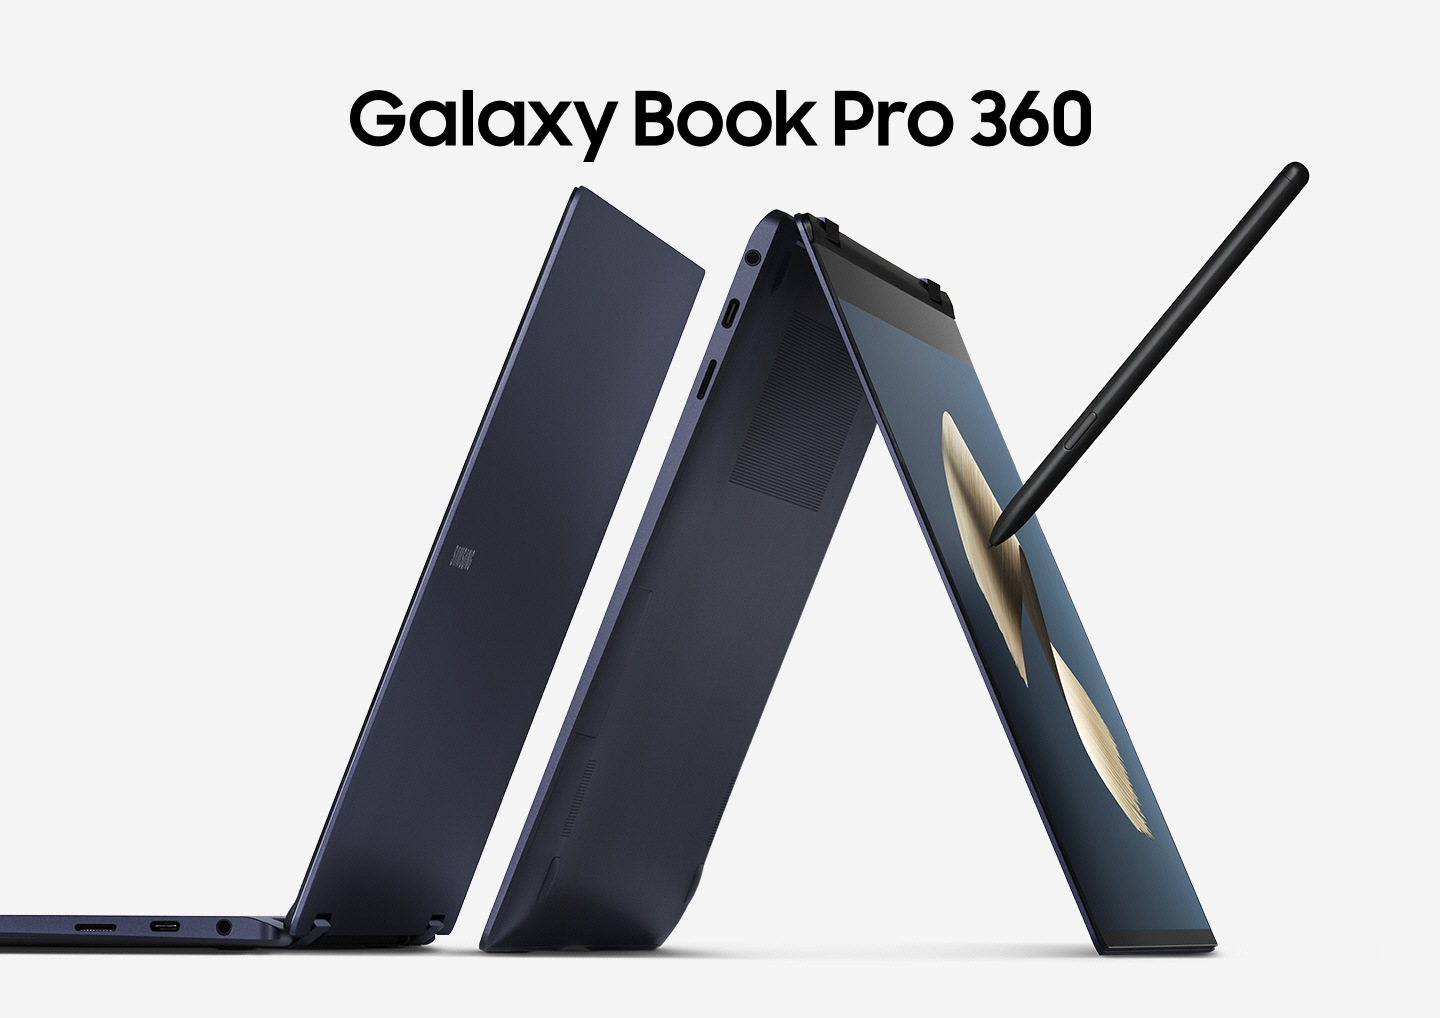 Dos idénticos 360 Galaxy Book Pro 360 en azul místico se colocan uno al lado del otro. Uno de ellos está equipado con el estilo s, en modo de tienda, descansando en el borde de la pantalla y el teclado. Galaxy Book Pro 360 'está escrito